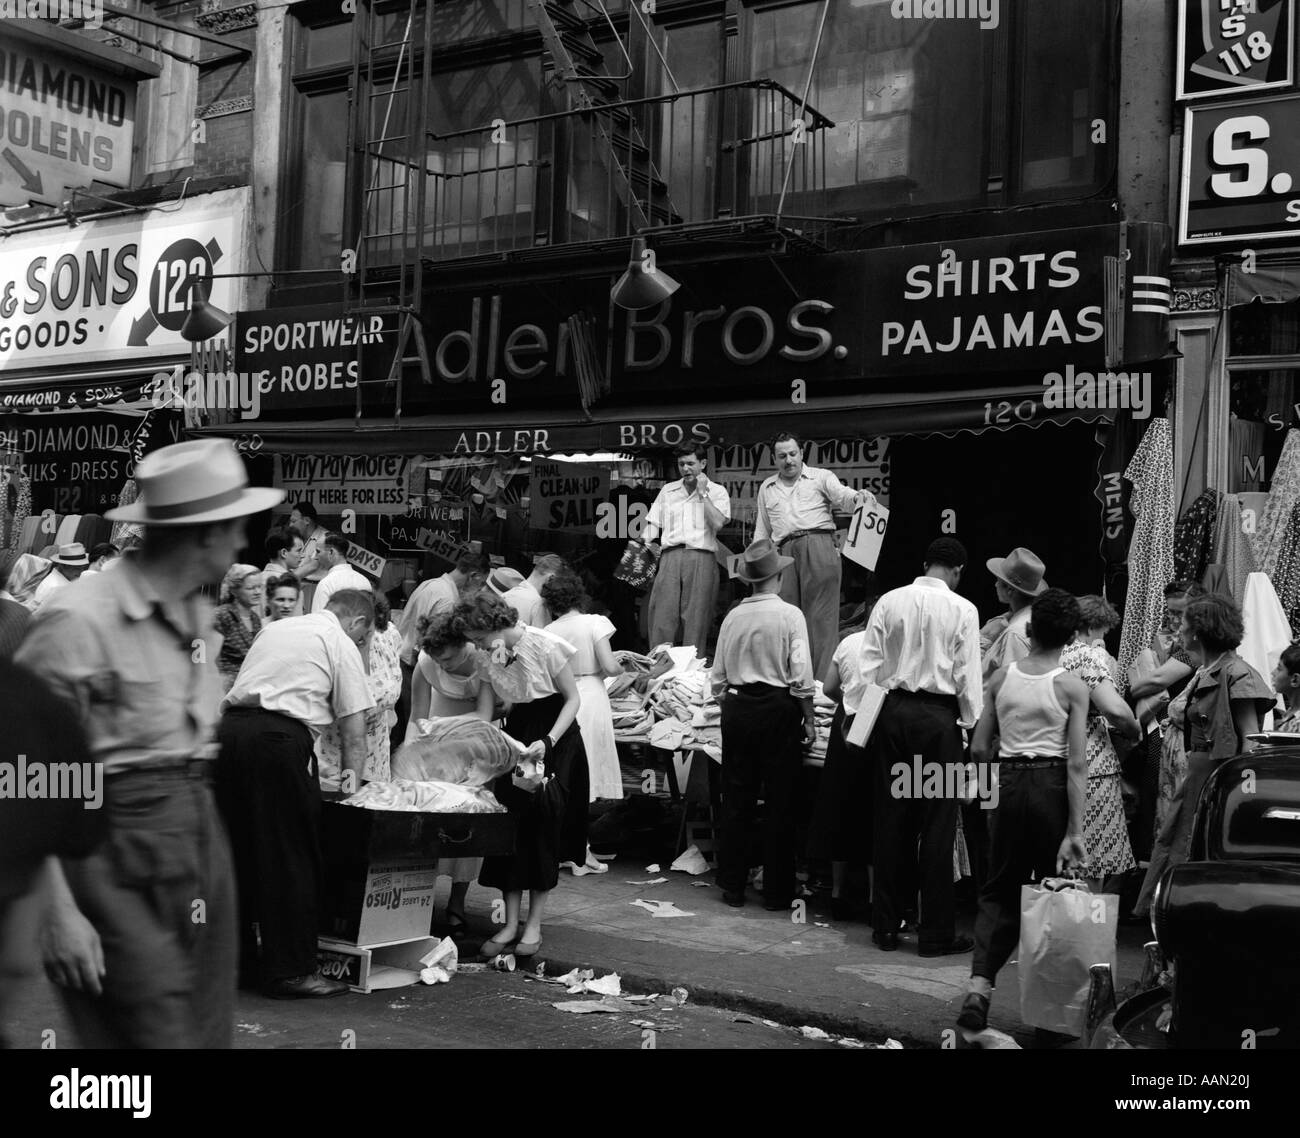 1950s SIDEWALK MERCHANTS ON NEW YORK'S LOWER EAST SIDE Stock Photo